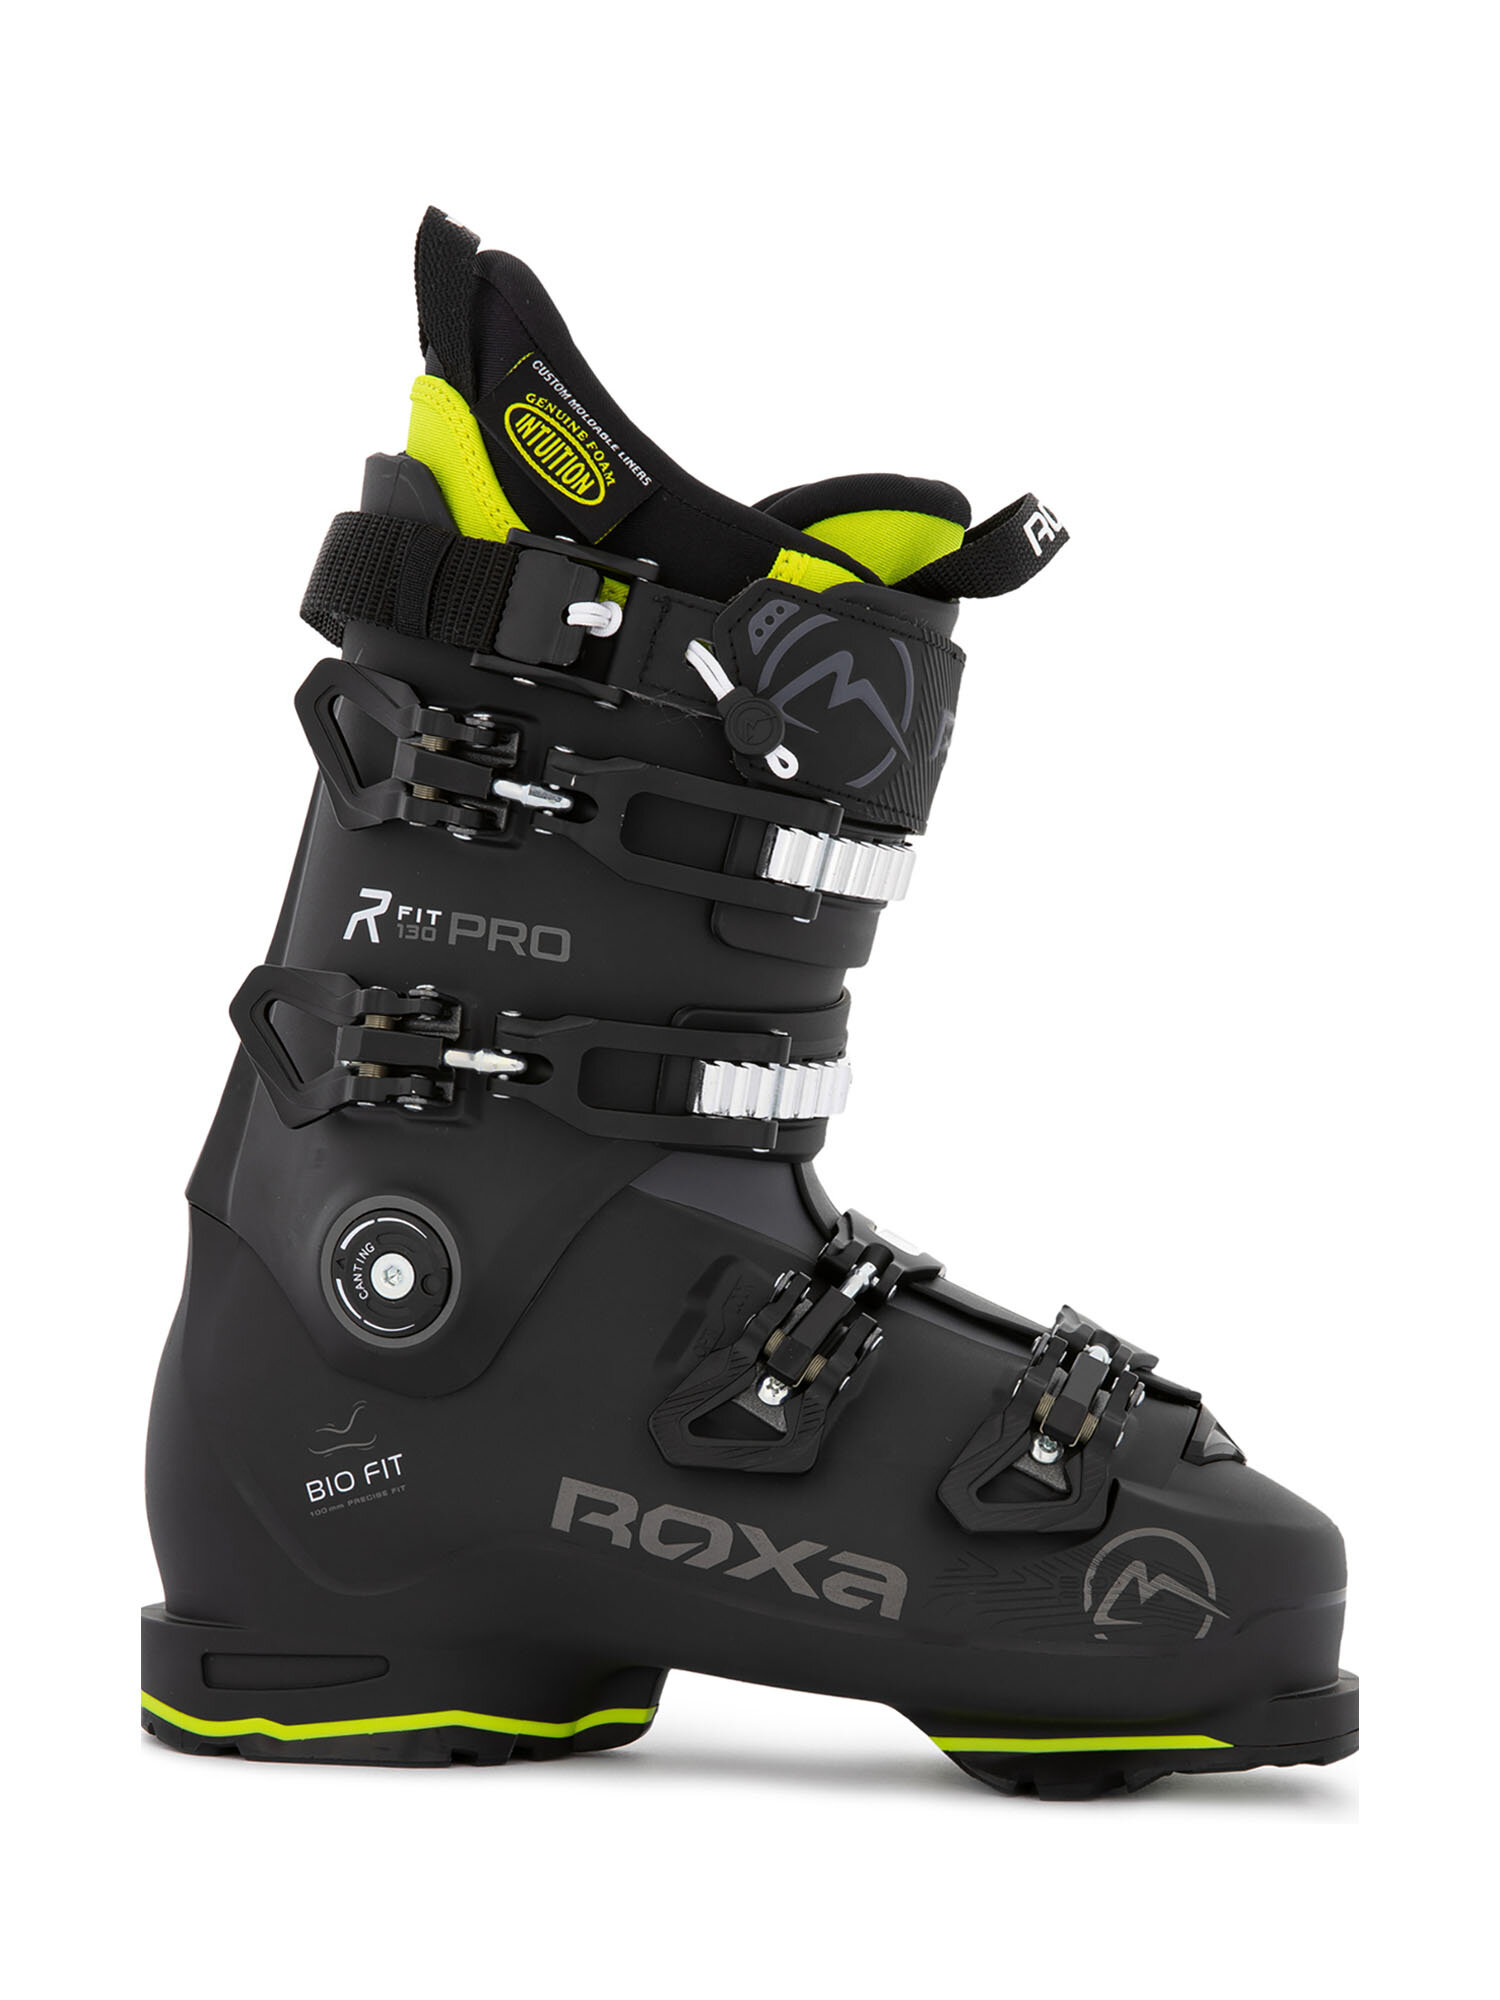 Горнолыжные ботинки ROXA Rfit Pro 130 I.R. Gw Black/Anthracite (см:27,5)